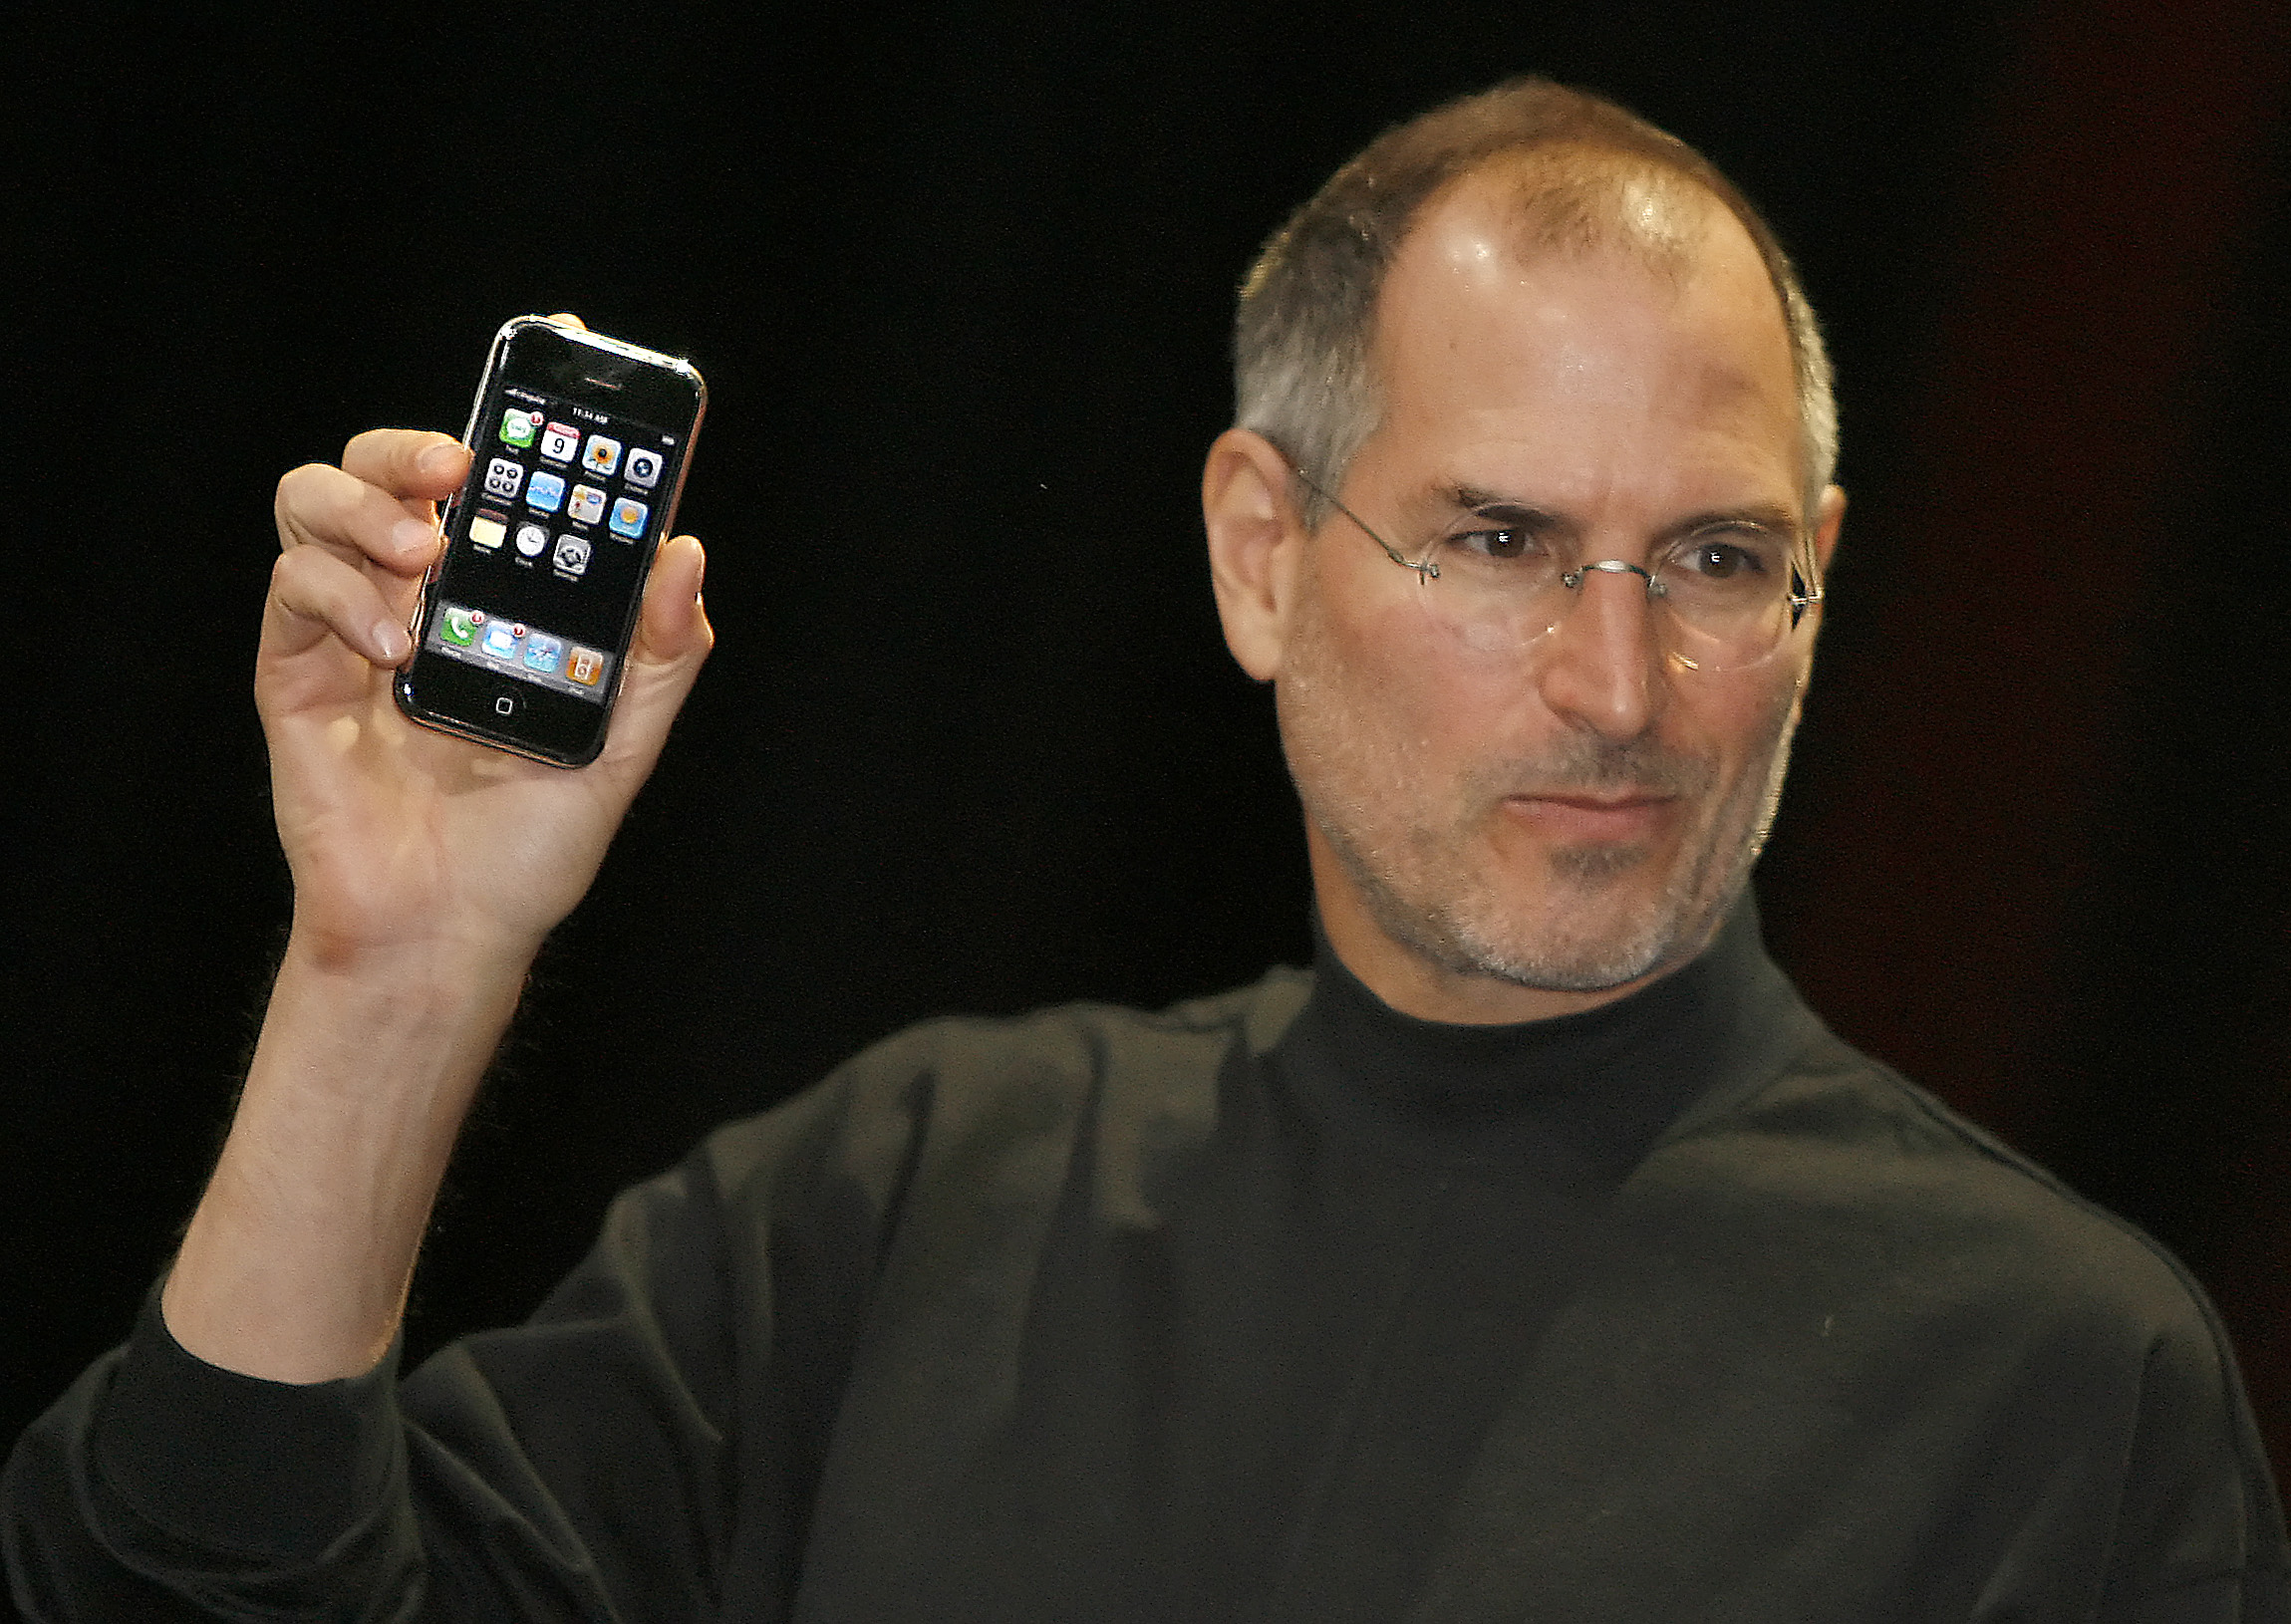 L'ex-PDG d'Apple, Steve Jobs, avait présenté le 9 janvier 2007 à San Francisco le tout premier iPhone, avant sa commercialisation en juin. AFP/Tony Avelar